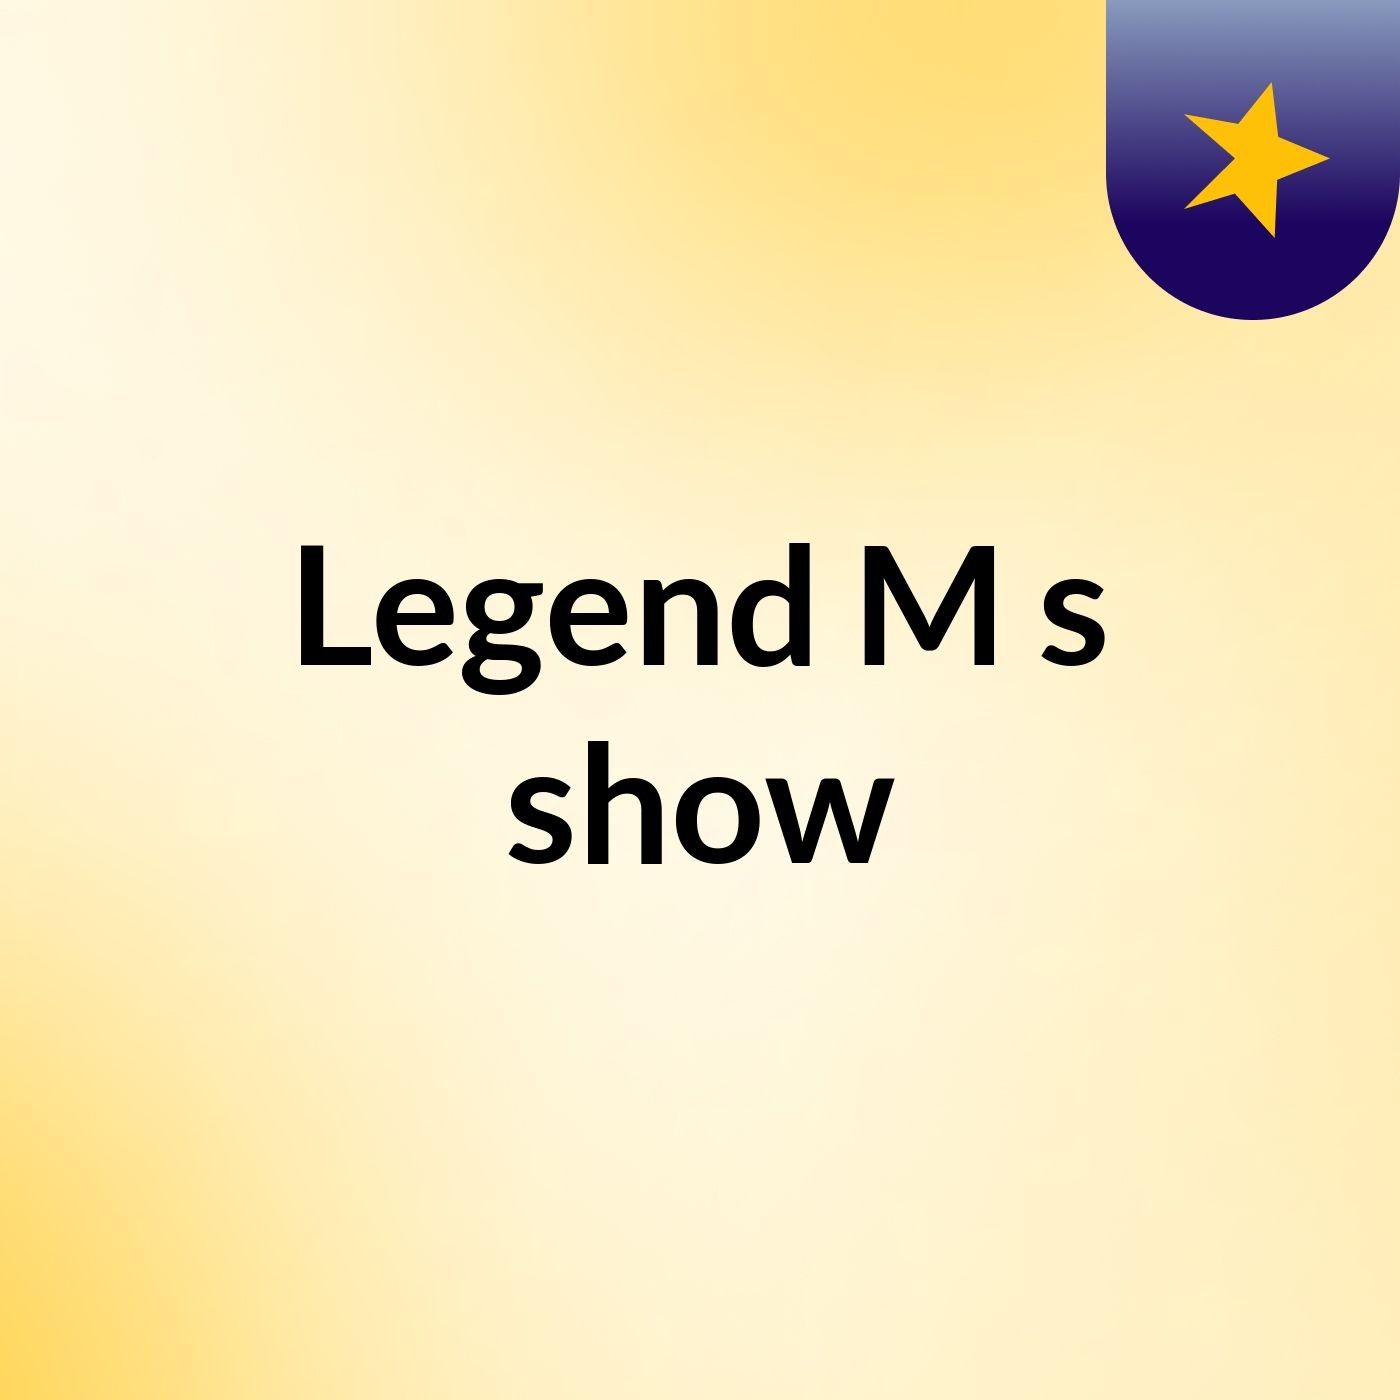 Legend M's show